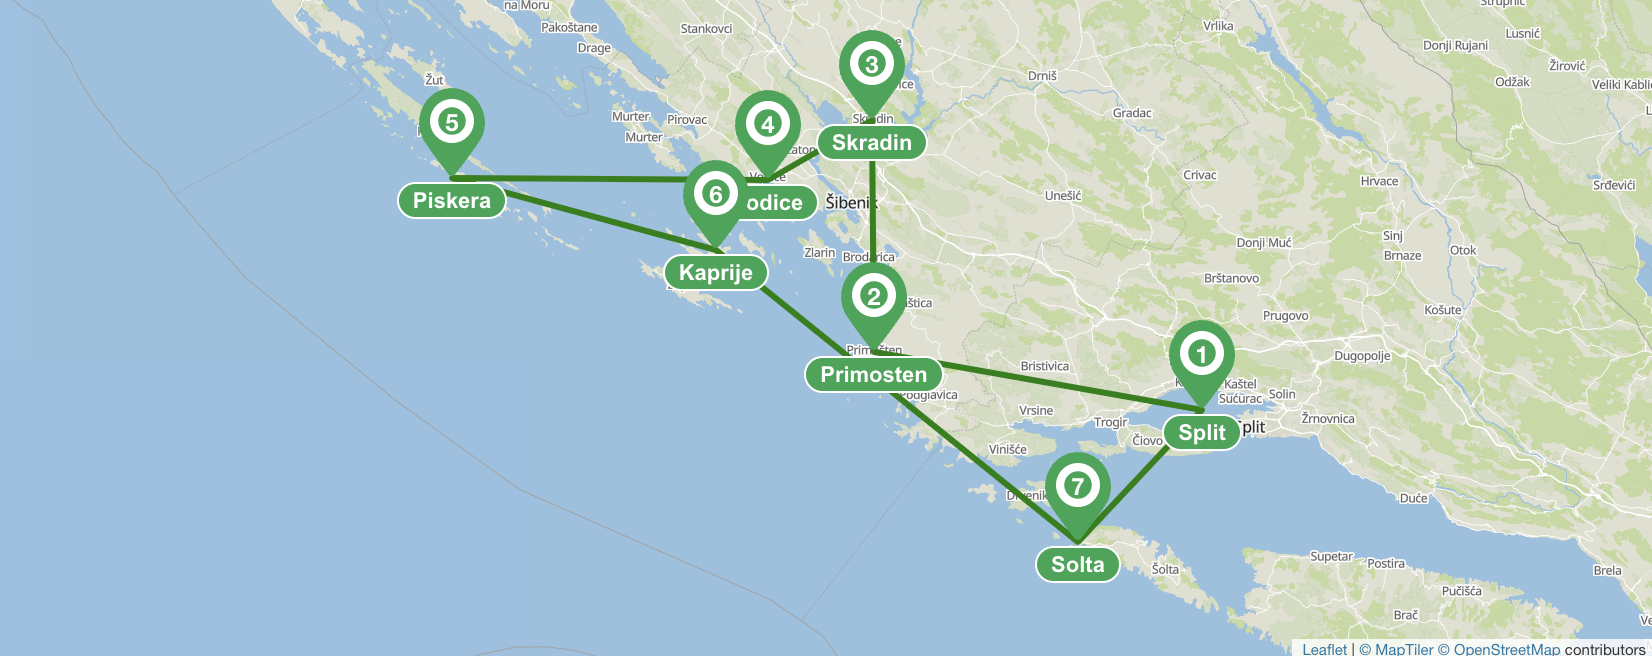 Itinerario en velero desde Split (Norte) - 7 días